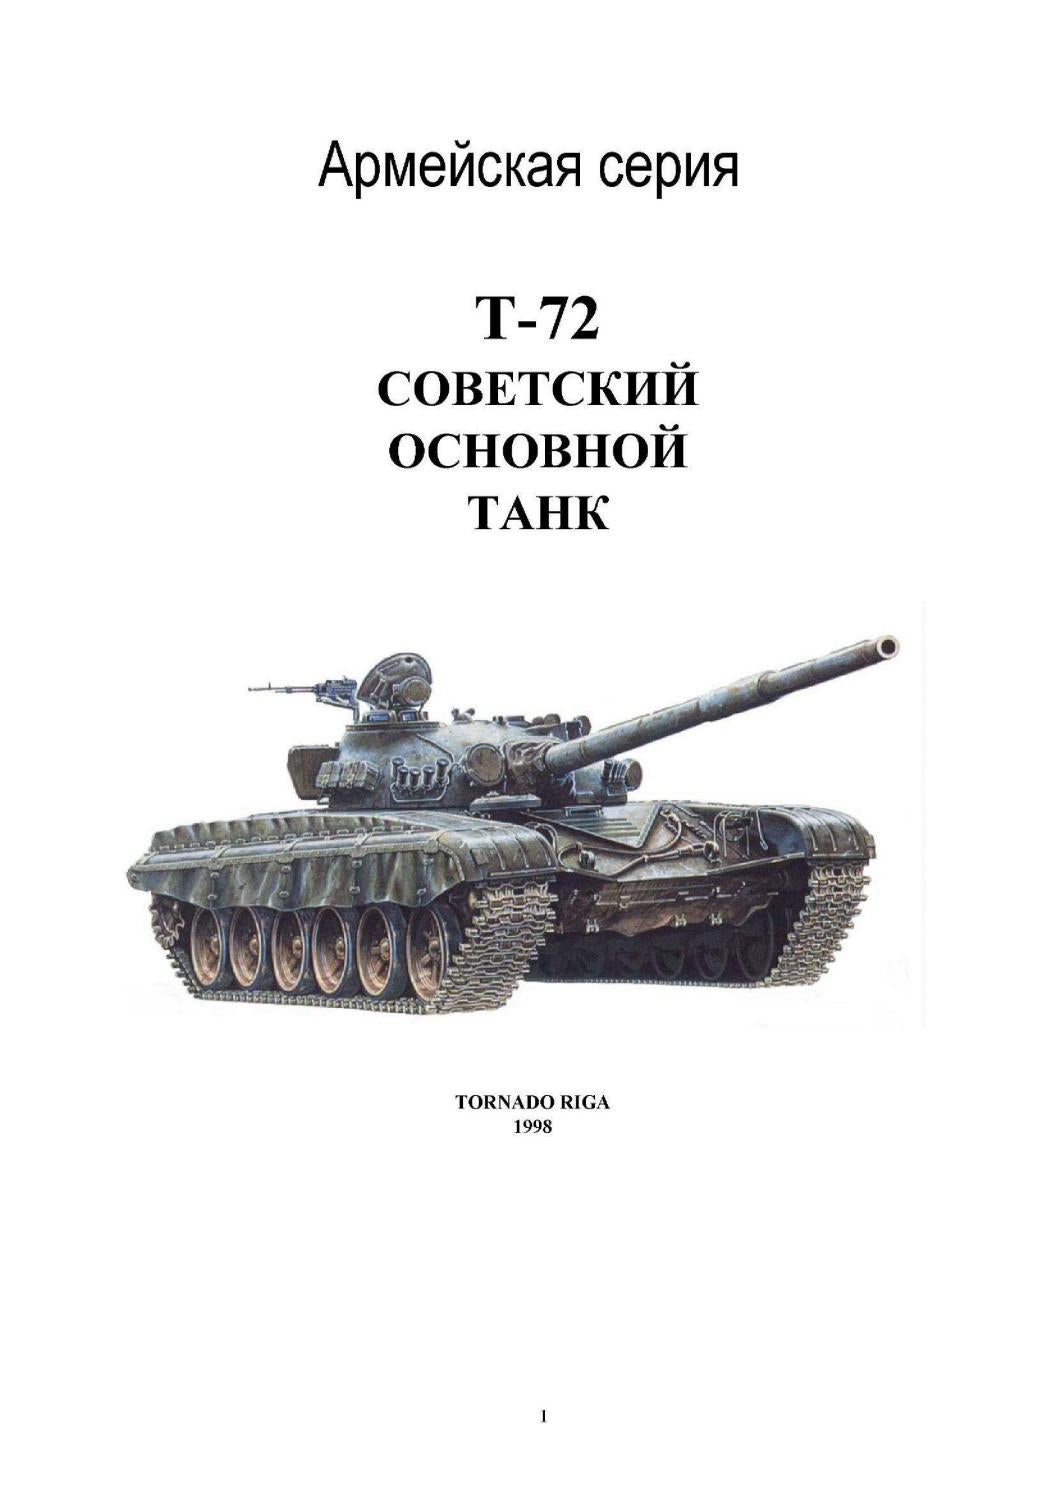 Tornado Армейская серия Т-72 Советский Основной Танк, 1998